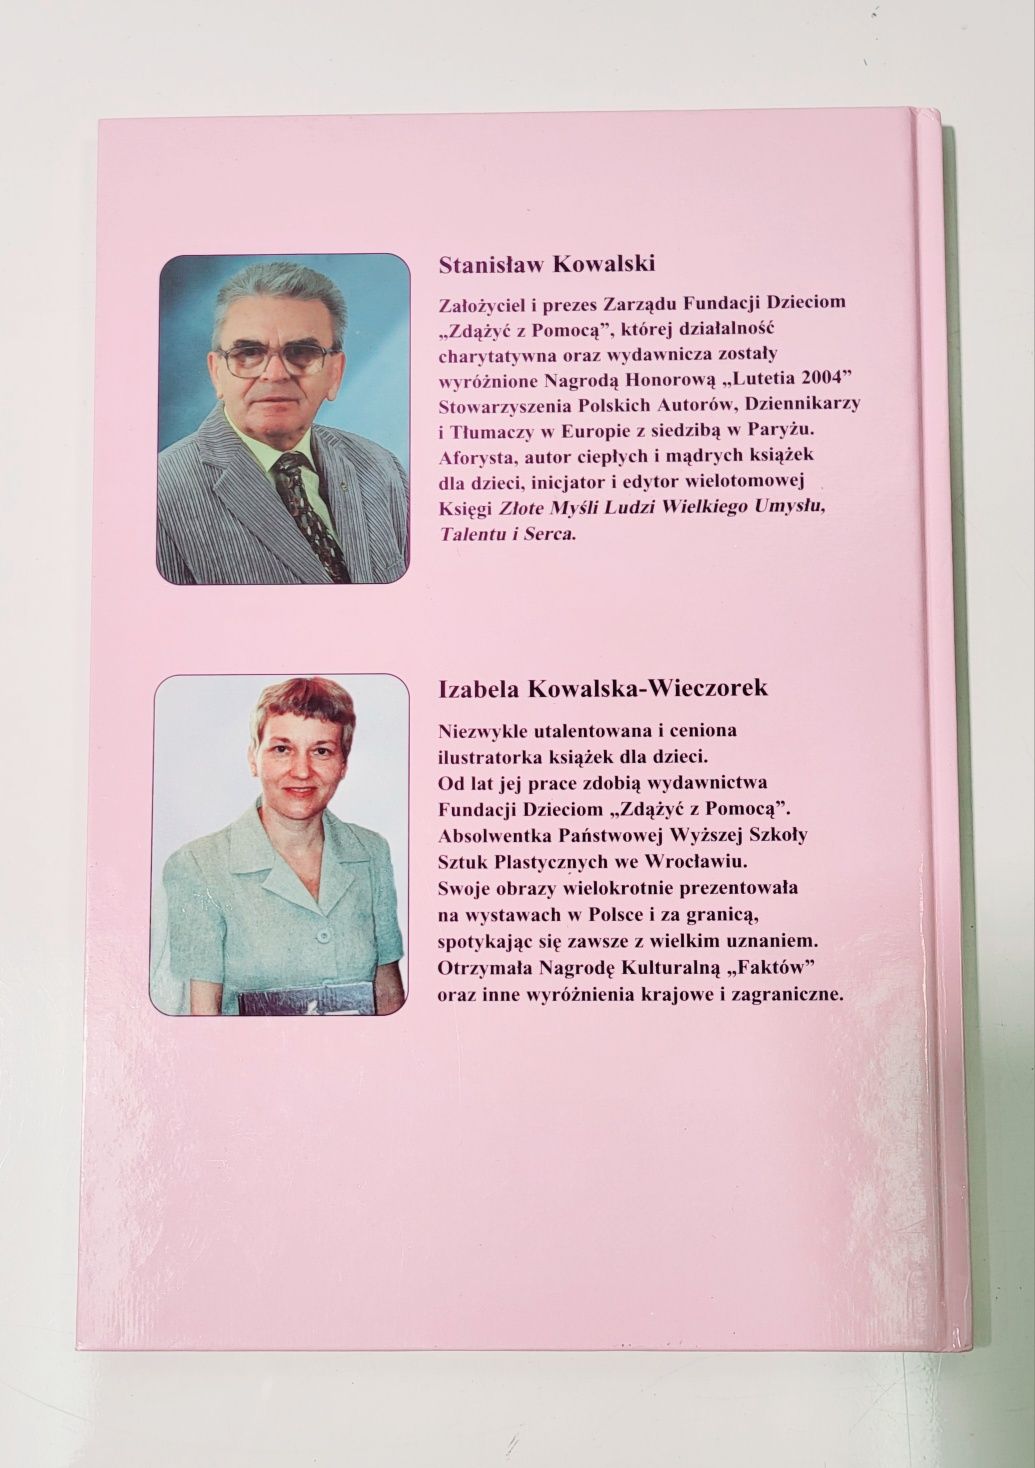 Stanisław Kowalski Opowieści dziadunia Książka i audiobook